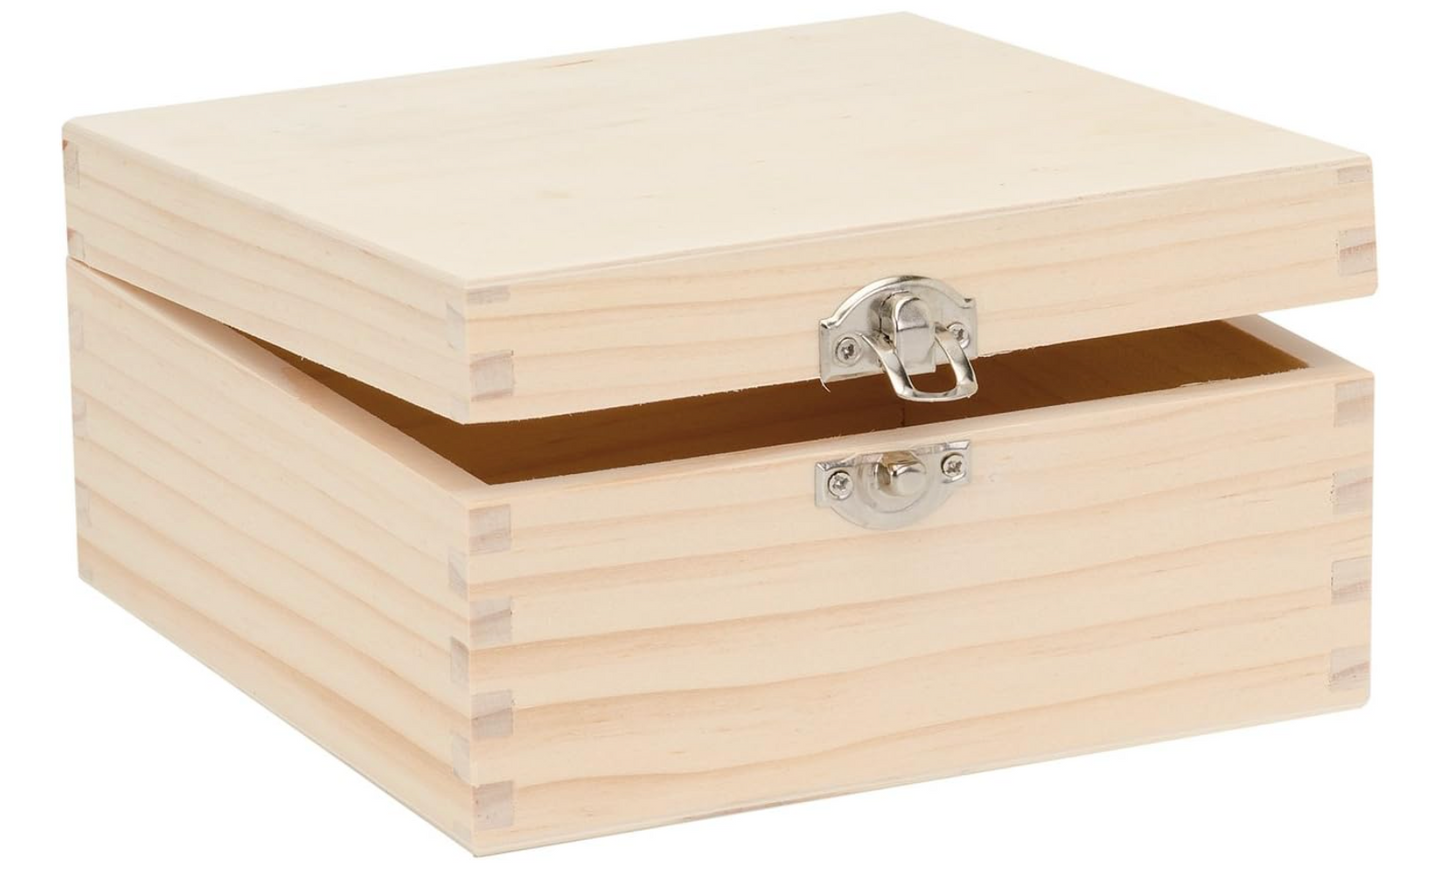 scatola in legno personalizzata con incisione laser per verniciare, incollare o Decorare